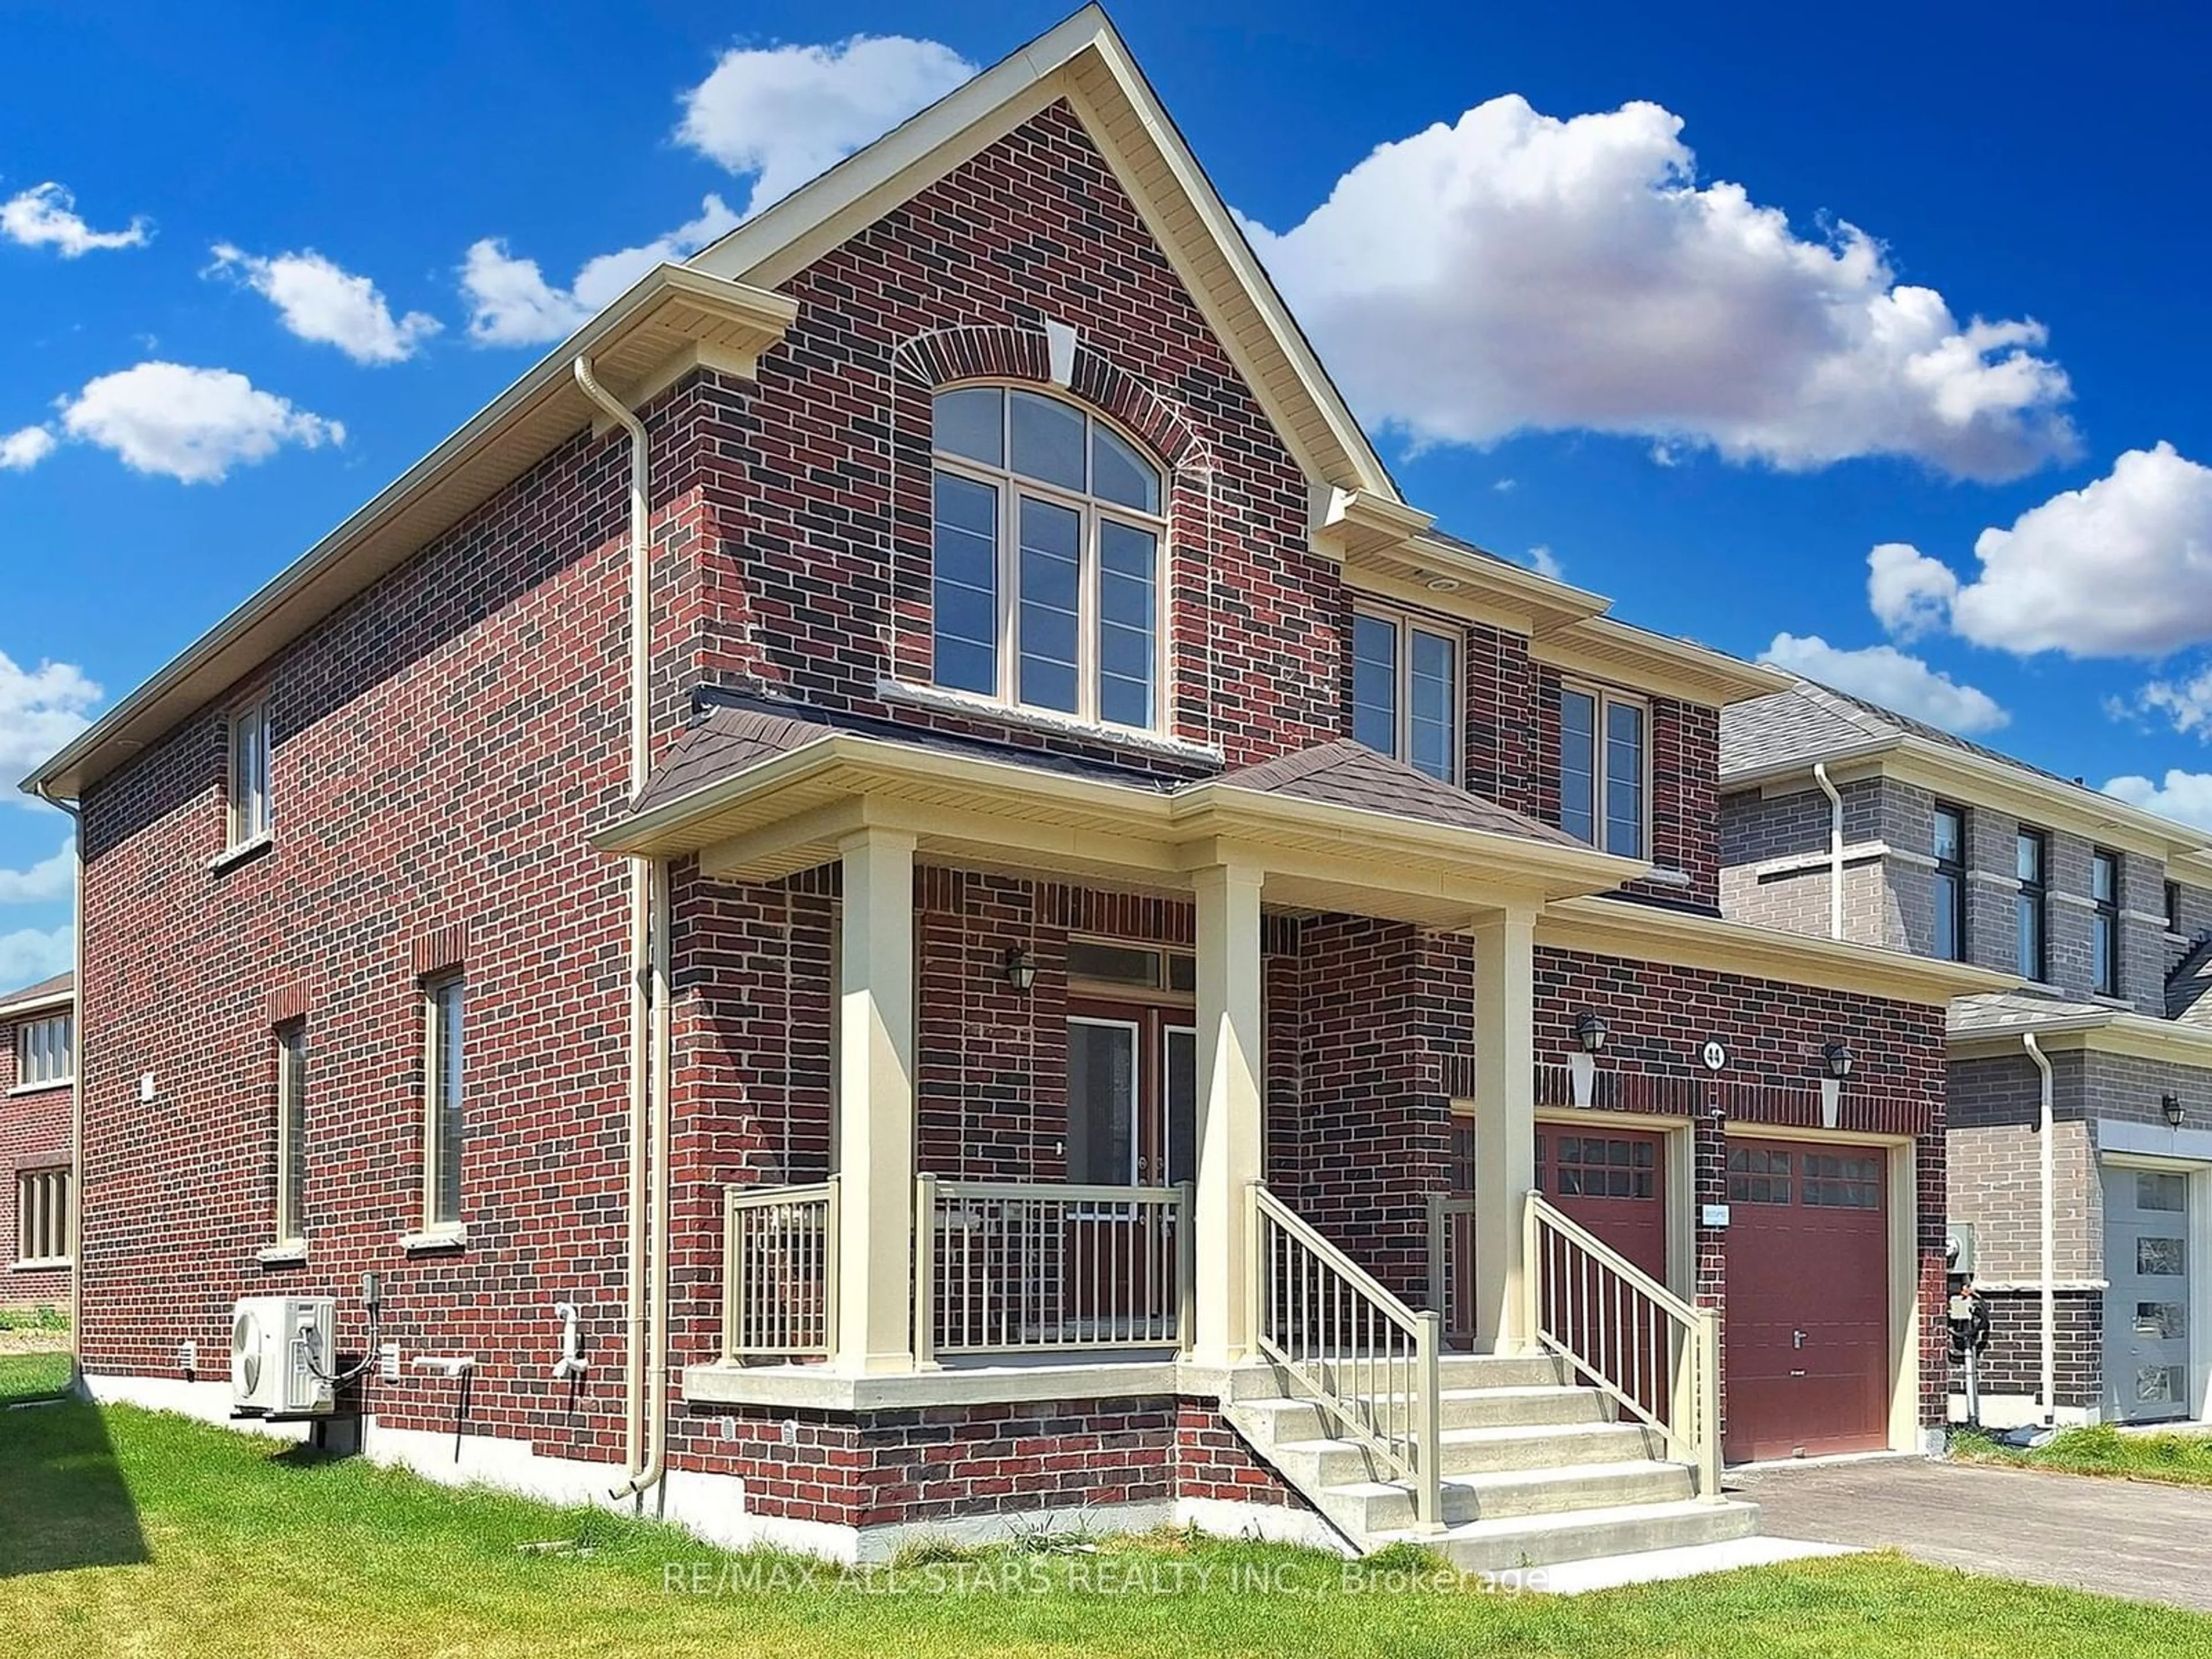 Home with brick exterior material for 44 Big Canoe Dr, Georgina Ontario L0E 1R0